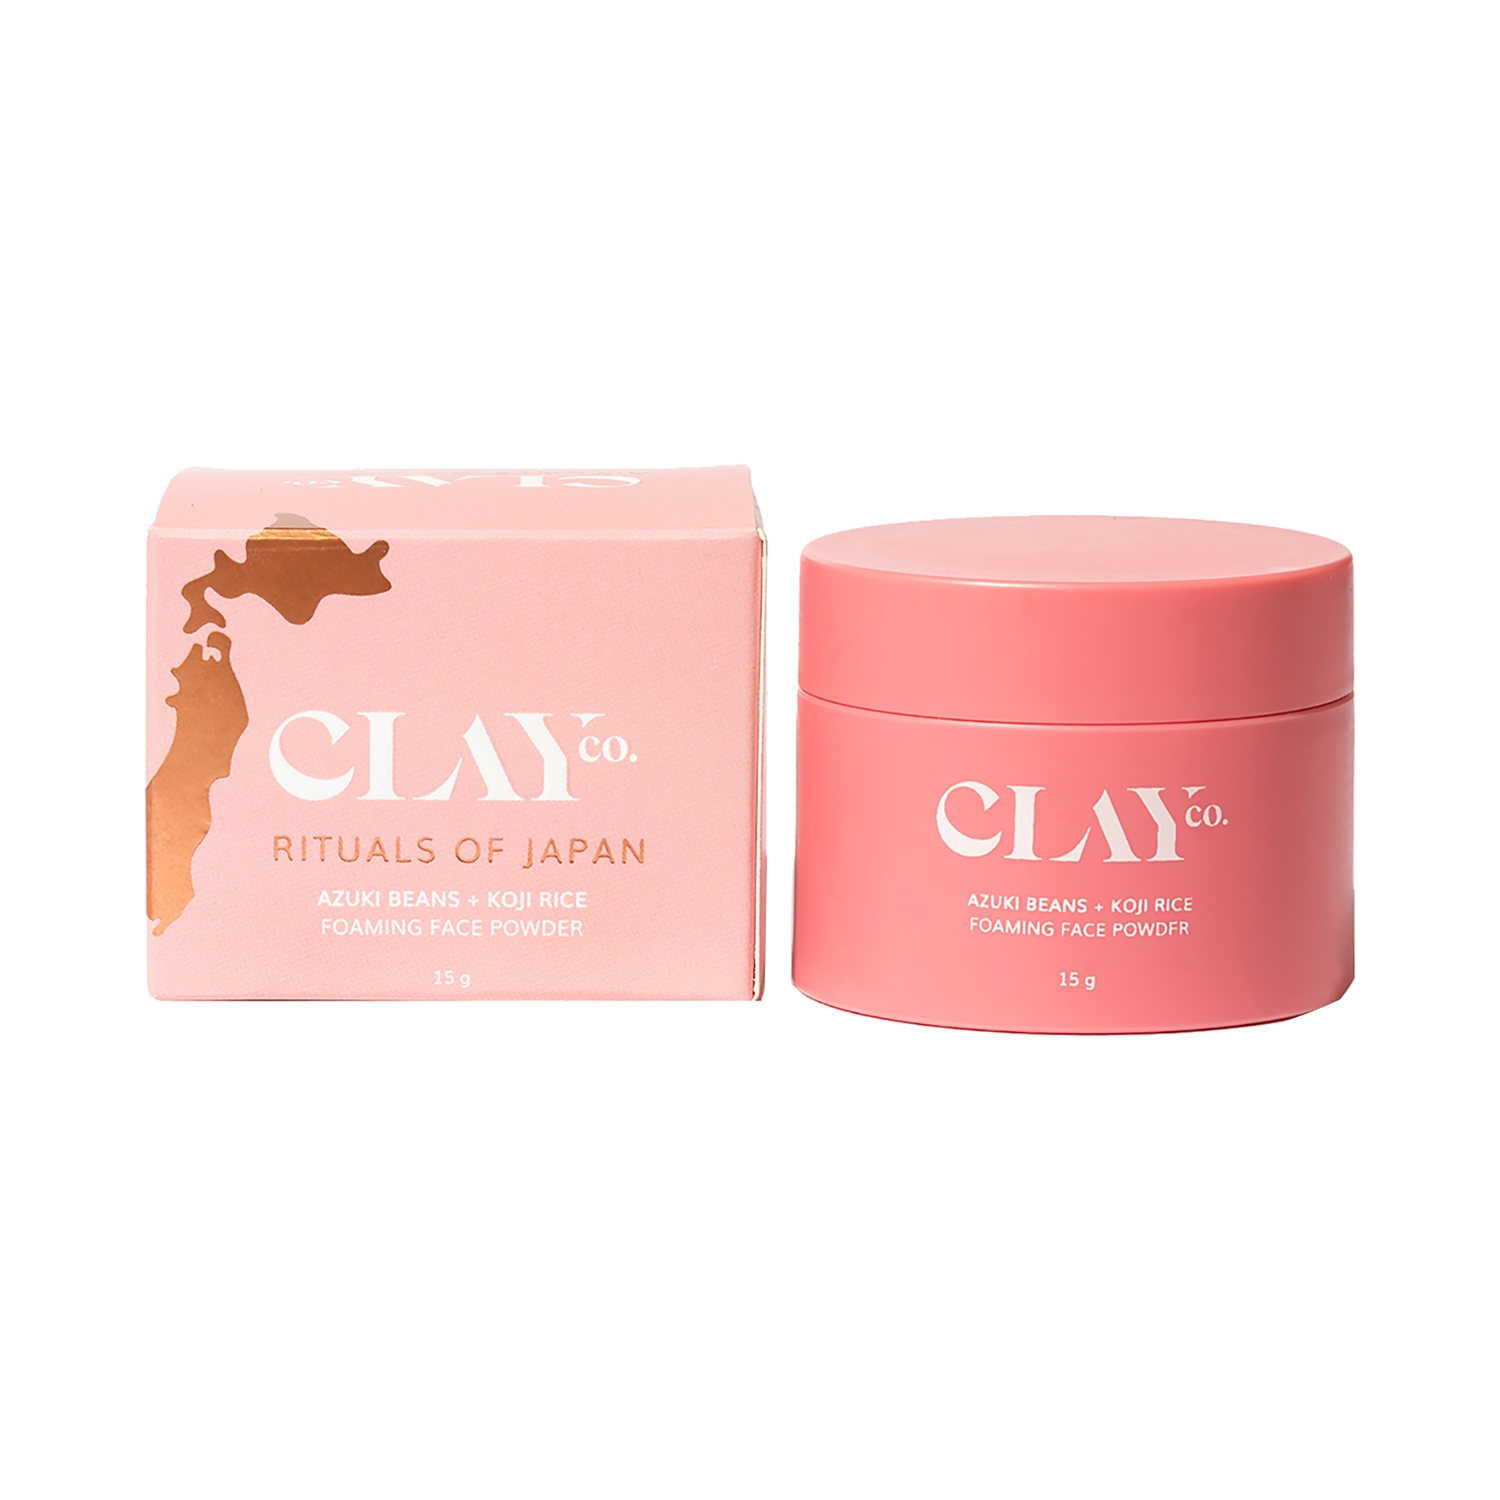 ClayCo | ClayCo adzuki beans + Koji Rice Foaming Face Powder (15g)